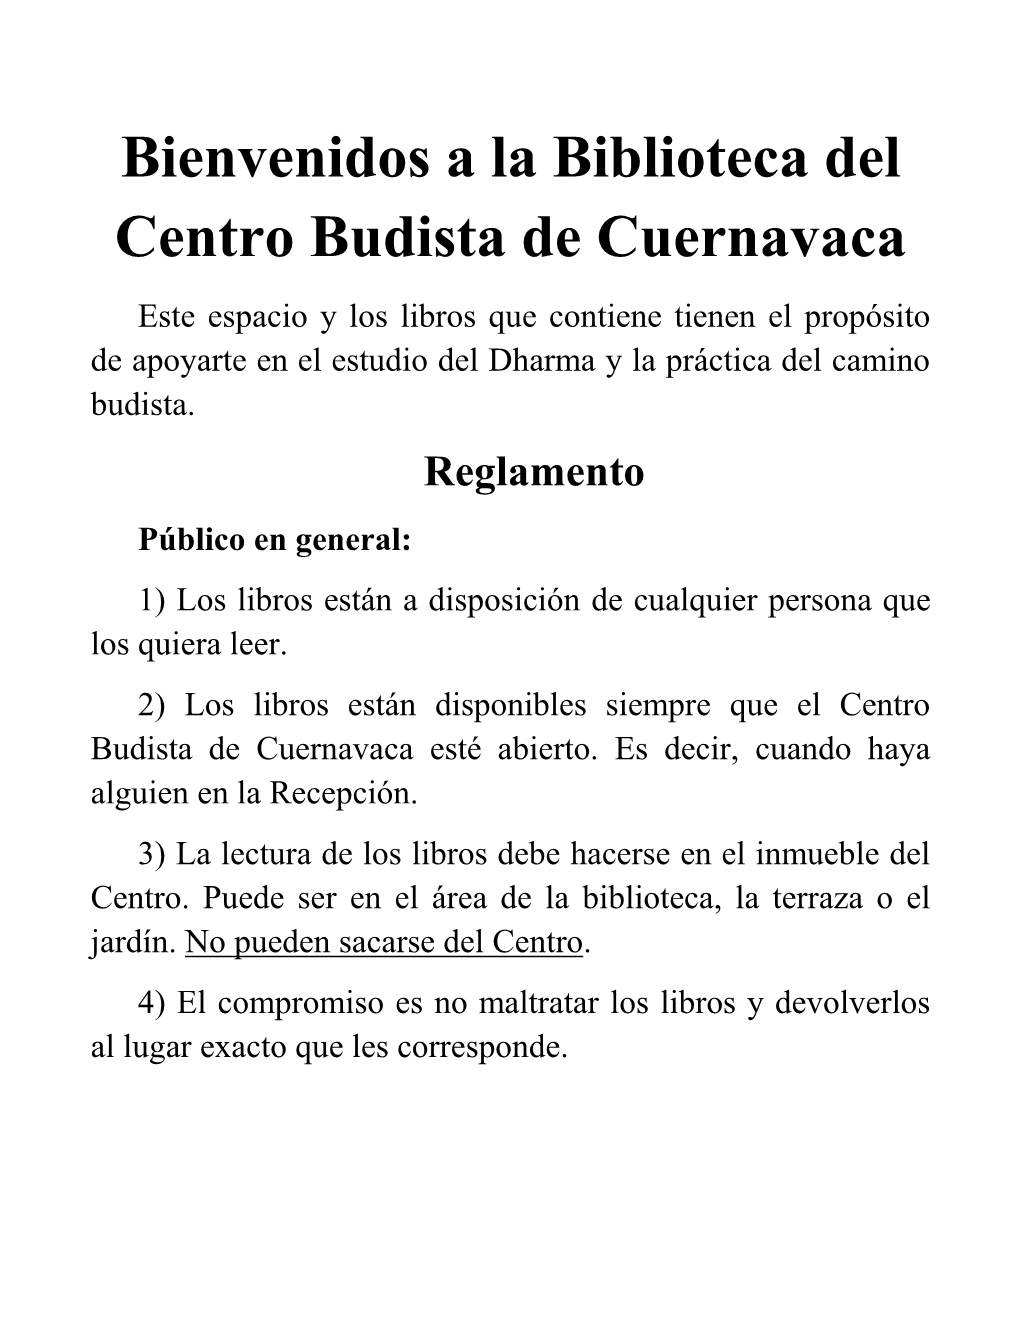 Bienvenidos a La Biblioteca Del Centro Budista De Cuernavaca